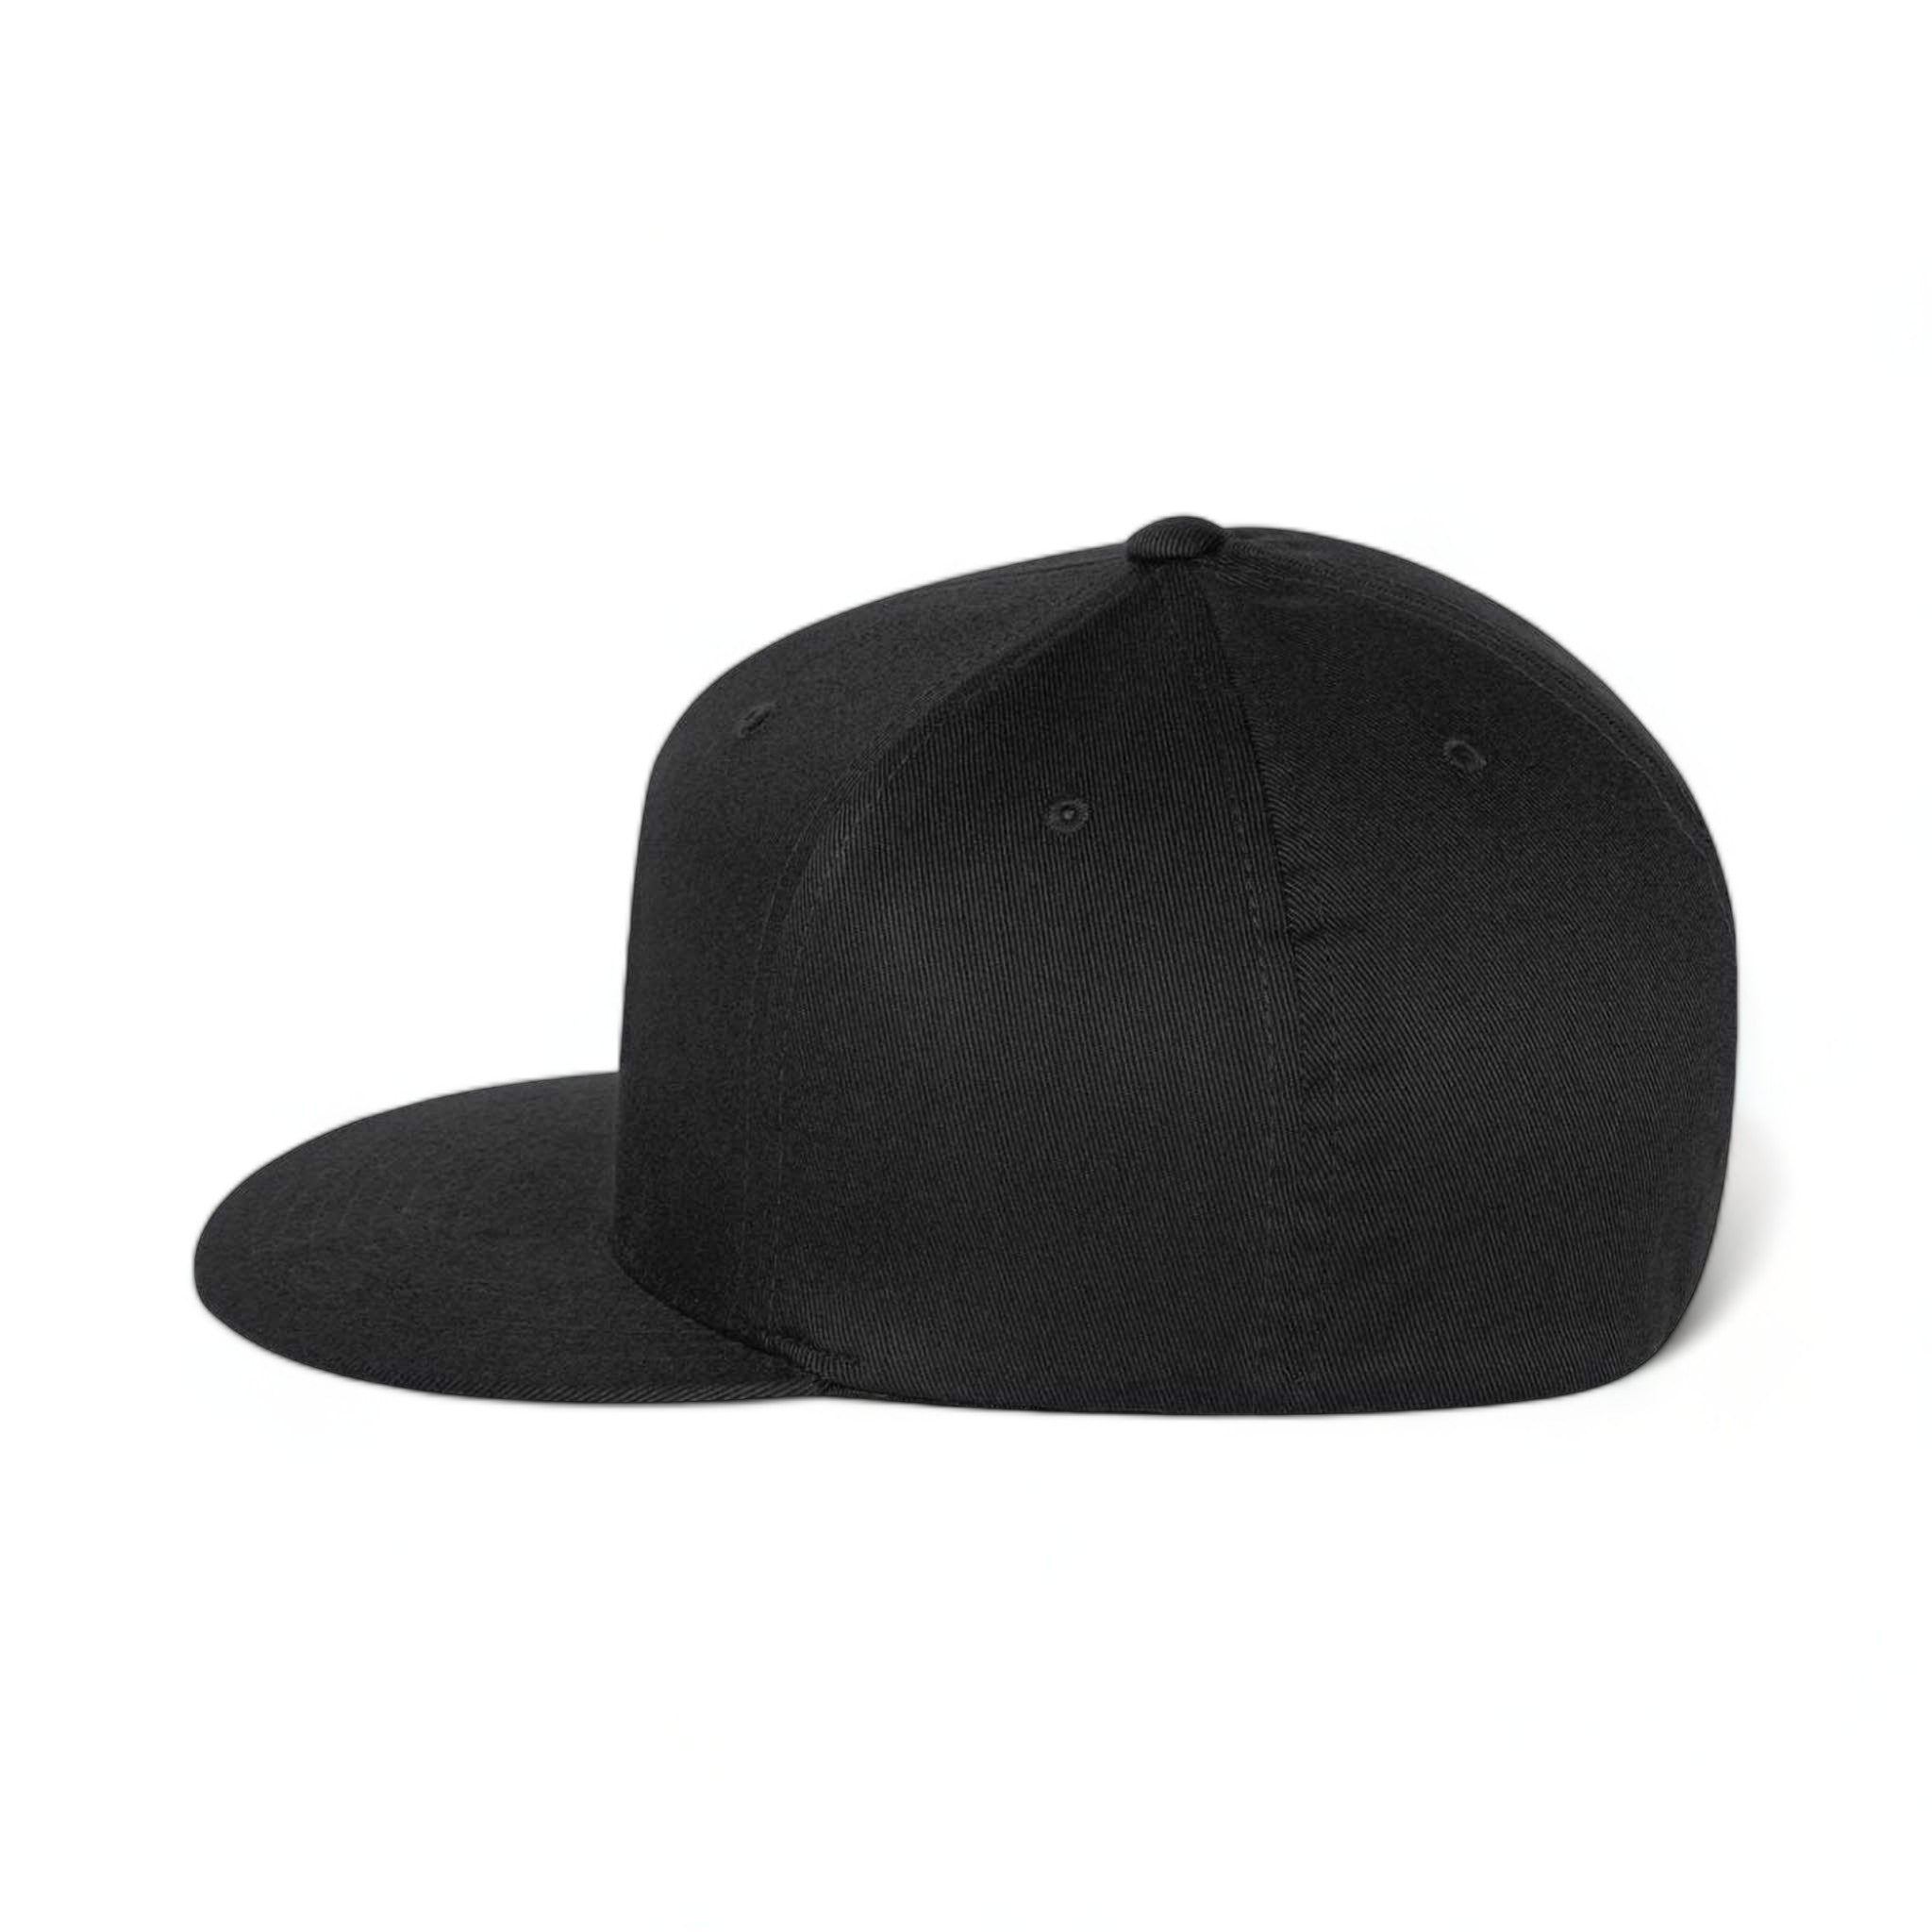 Side view of Flexfit 6297f custom hat in black